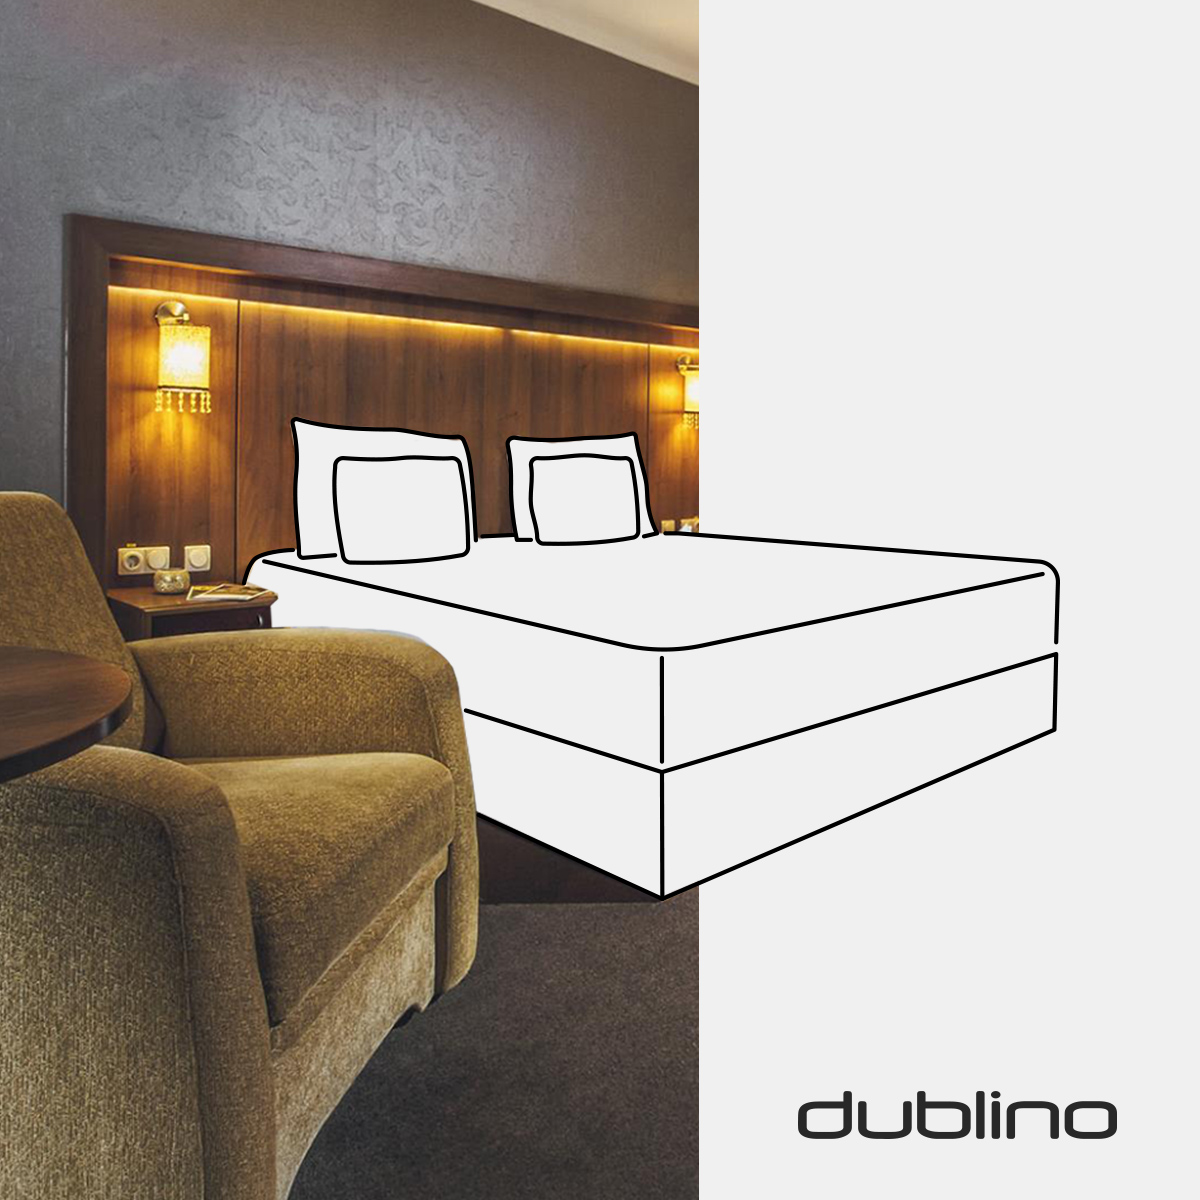 Dublino hotel bútor kampány 2020 - Doppio Creative